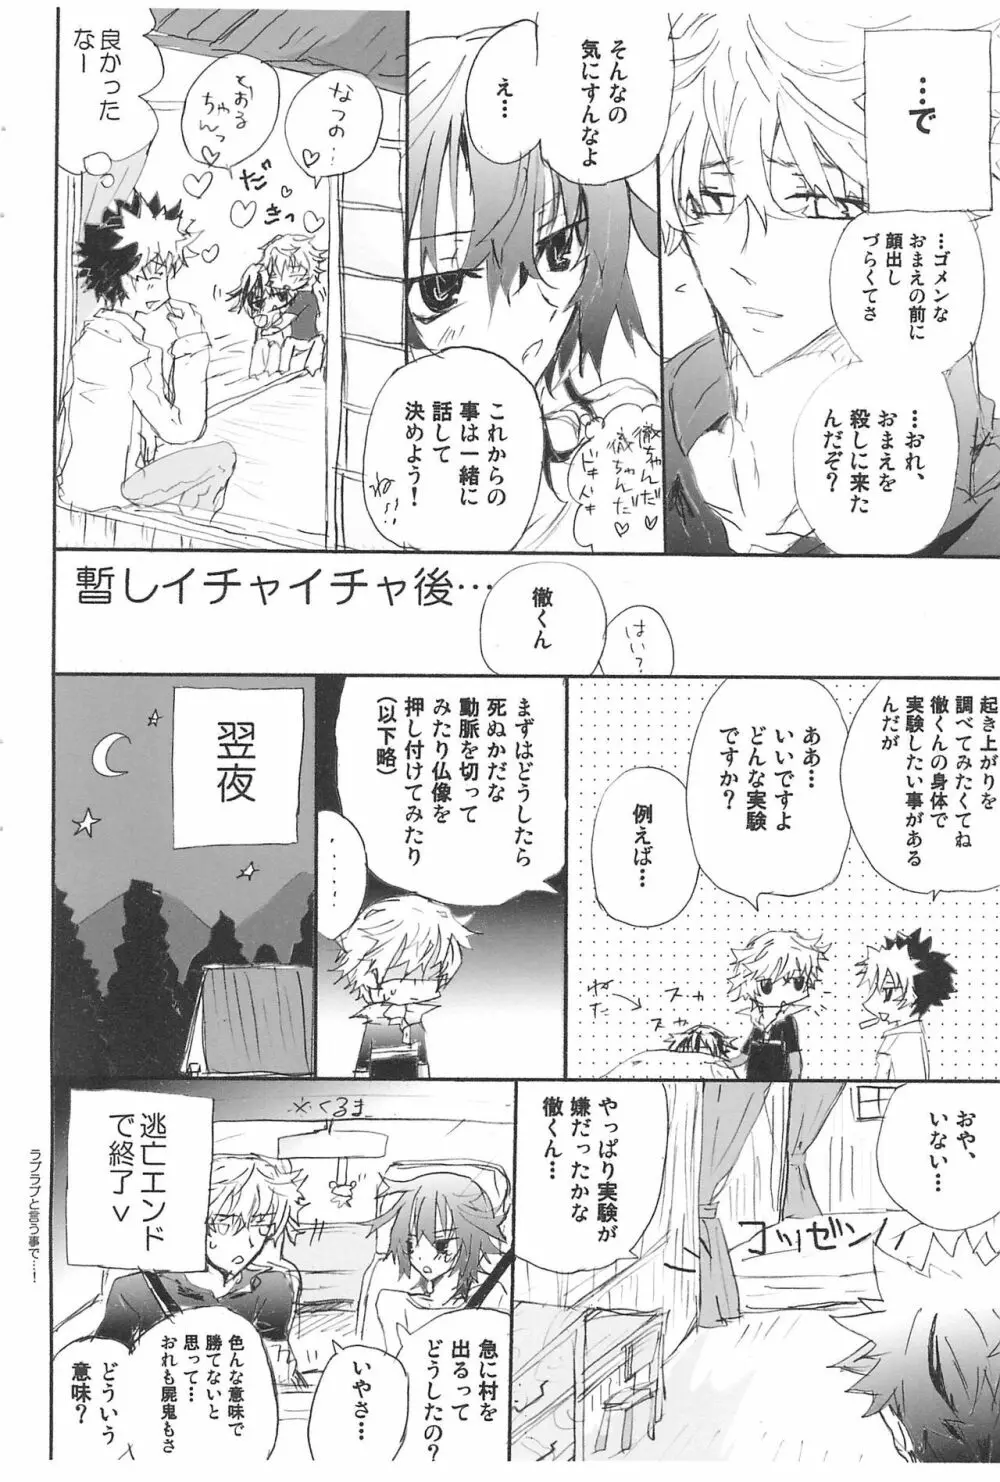 Shiki-hon 10 16ページ